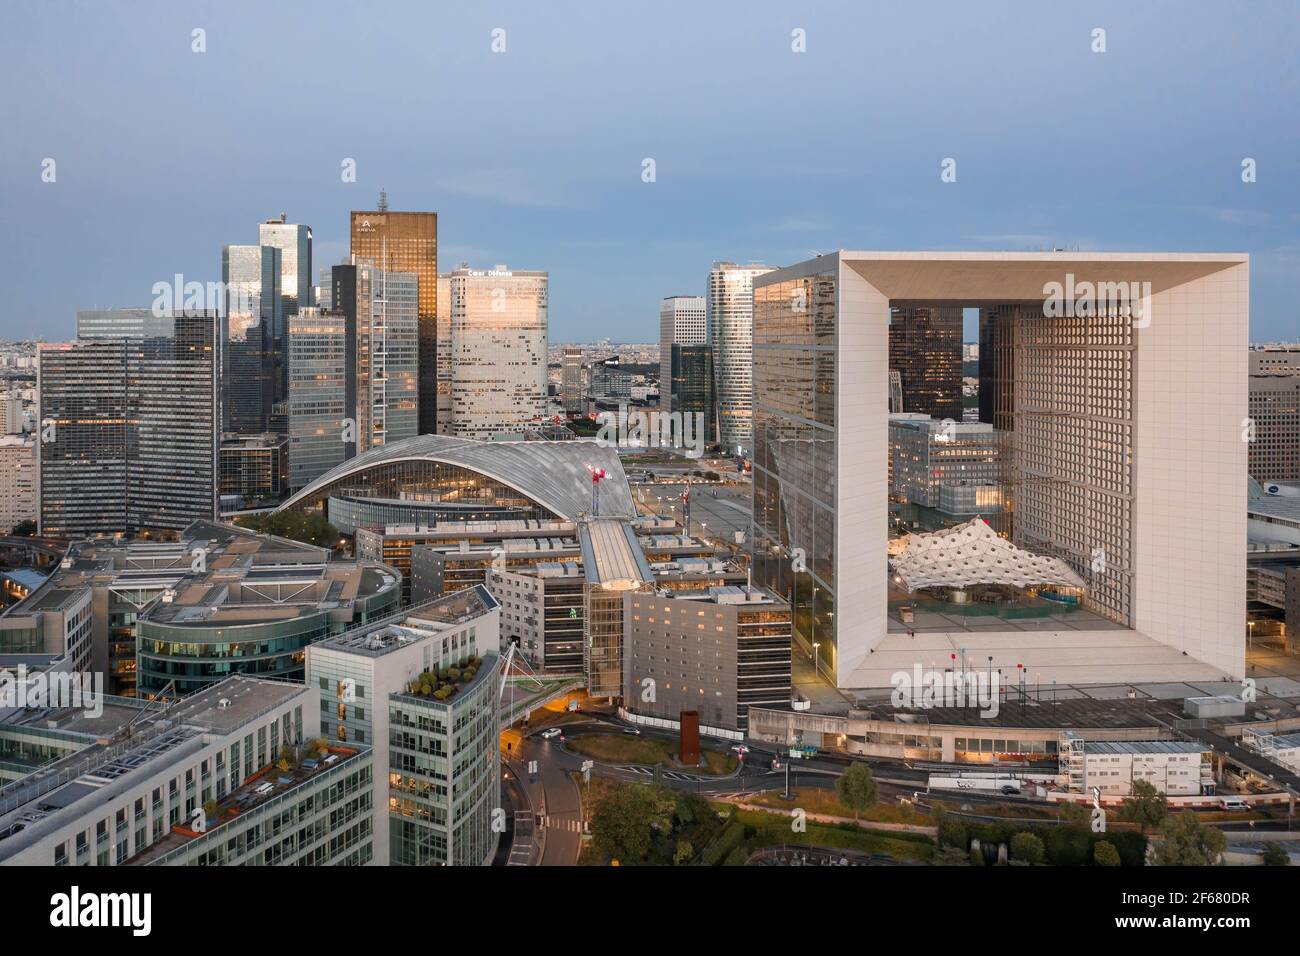 Paris, France - Jun 18, 2020: Aerial shot of skyscrapers in La Defense post pandemic lockdown at dusk Stock Photo